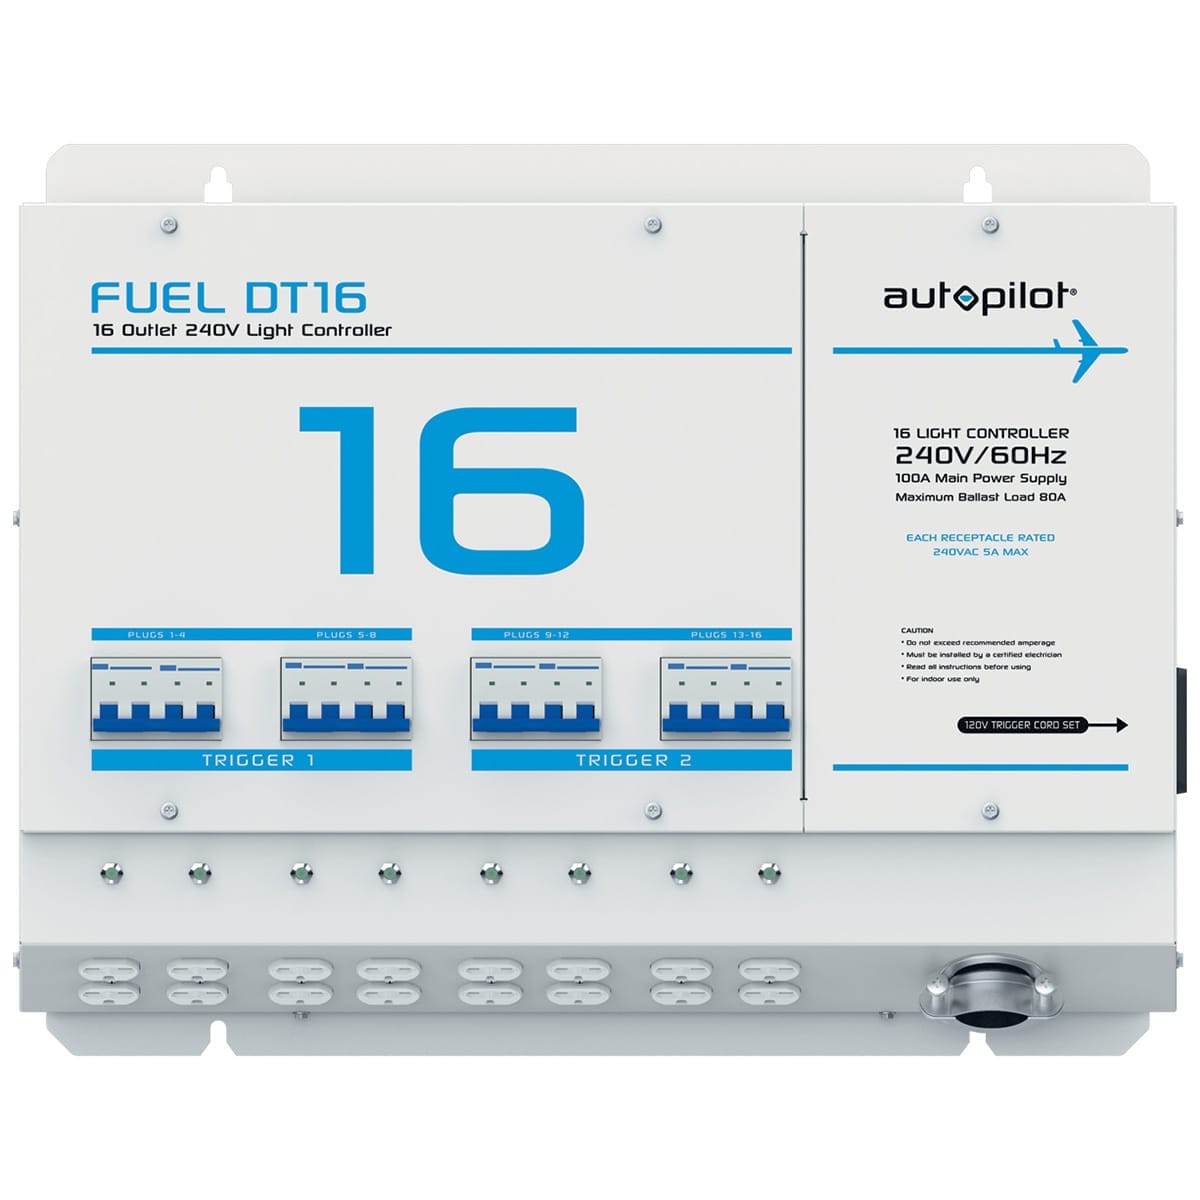 Autopilot Fuel DT16 Controller Front View